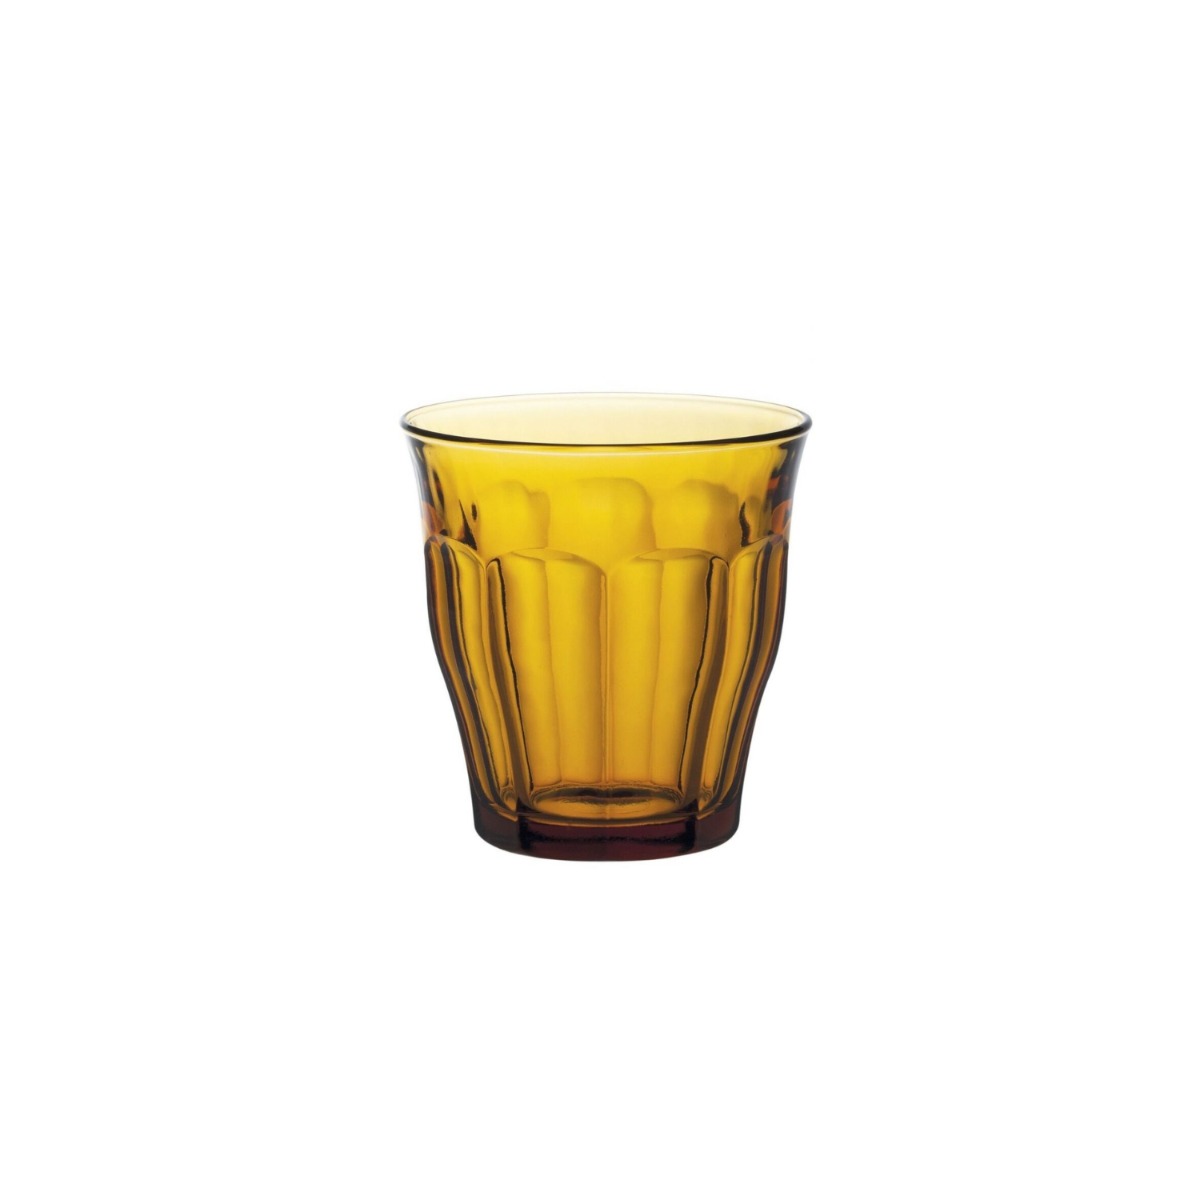 Glas Picardie 25 cl amberproduktzoombild #1